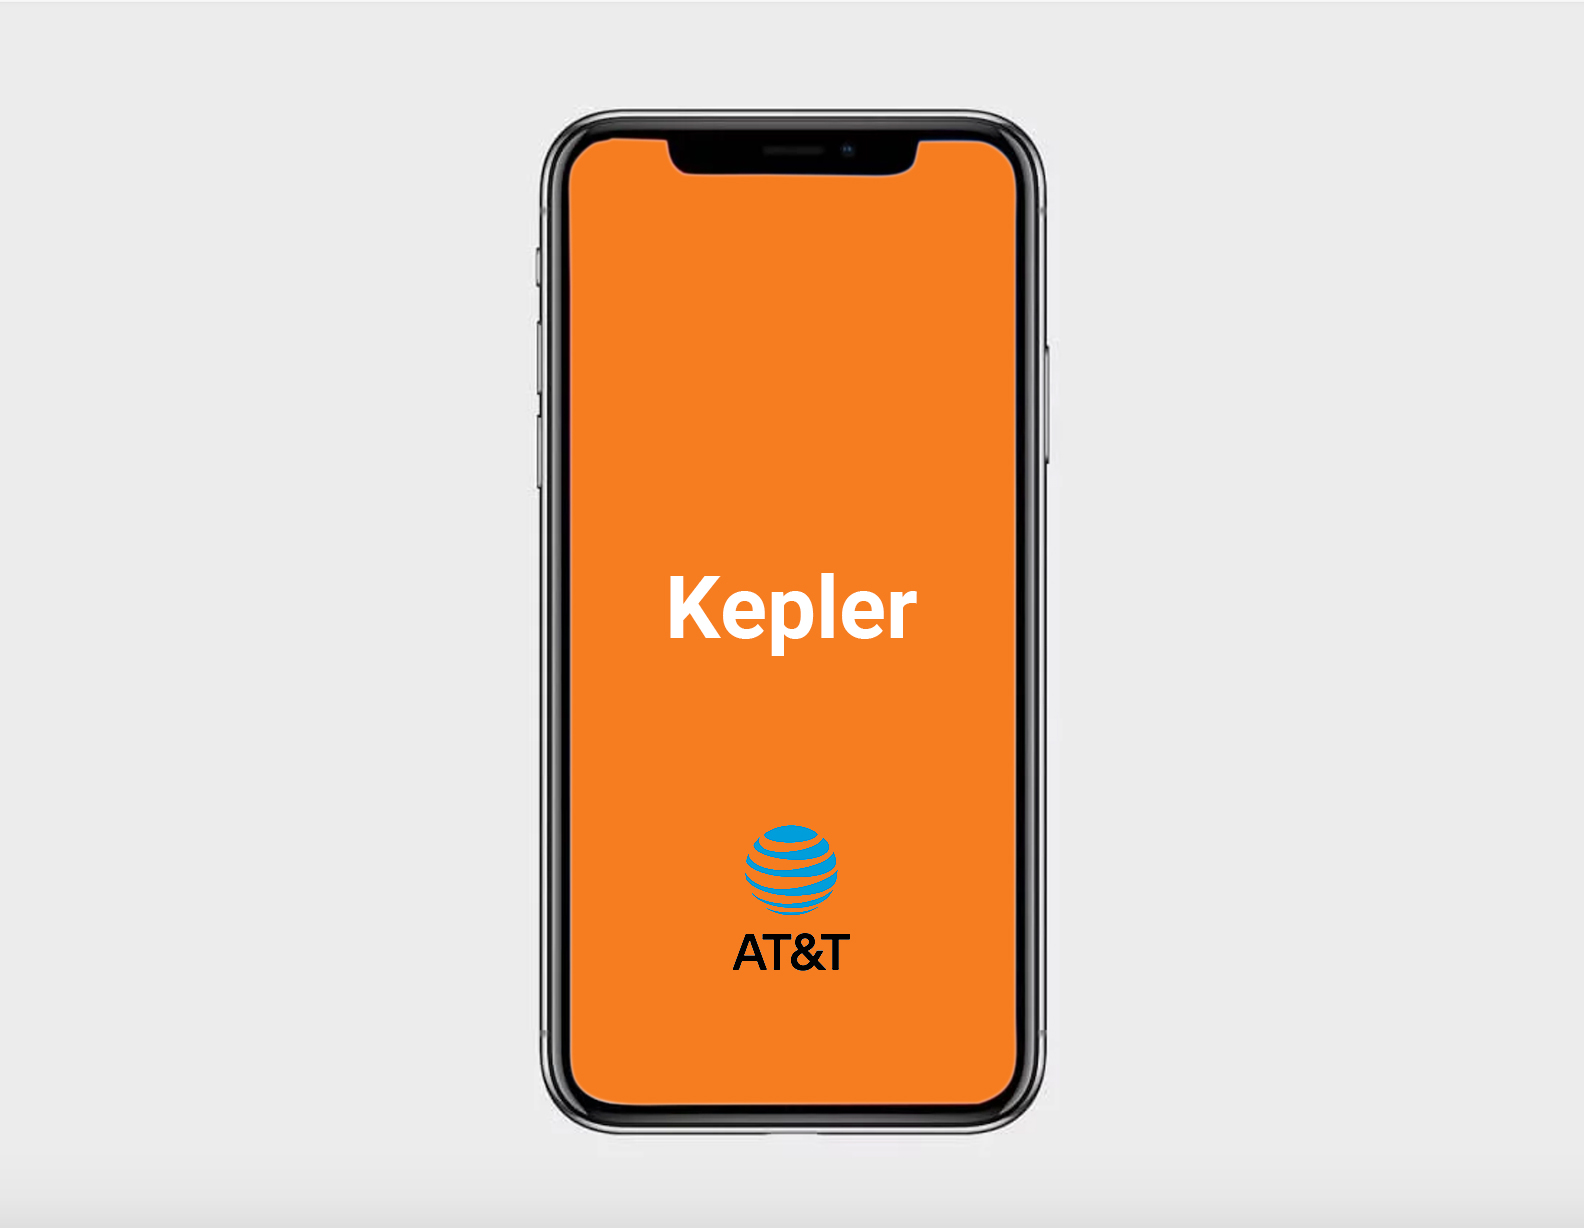 AT&T Kepler Mobile